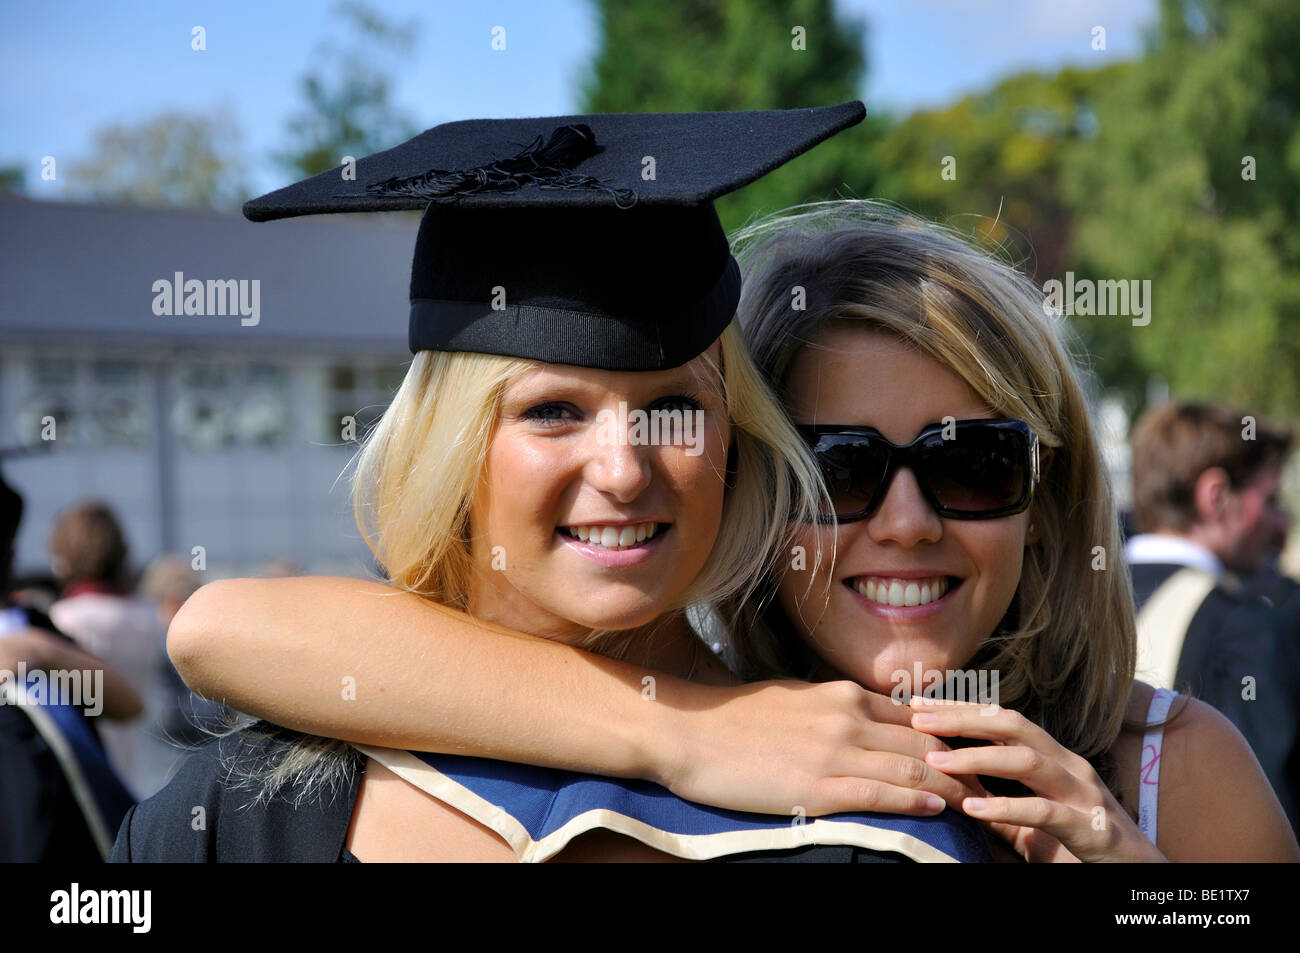 Junge weibliche Hochschulabsolvent mit ihrer Schwester, Oxford Brookes University, Headington, Oxfordshire, England, Vereinigtes Königreich Stockfoto